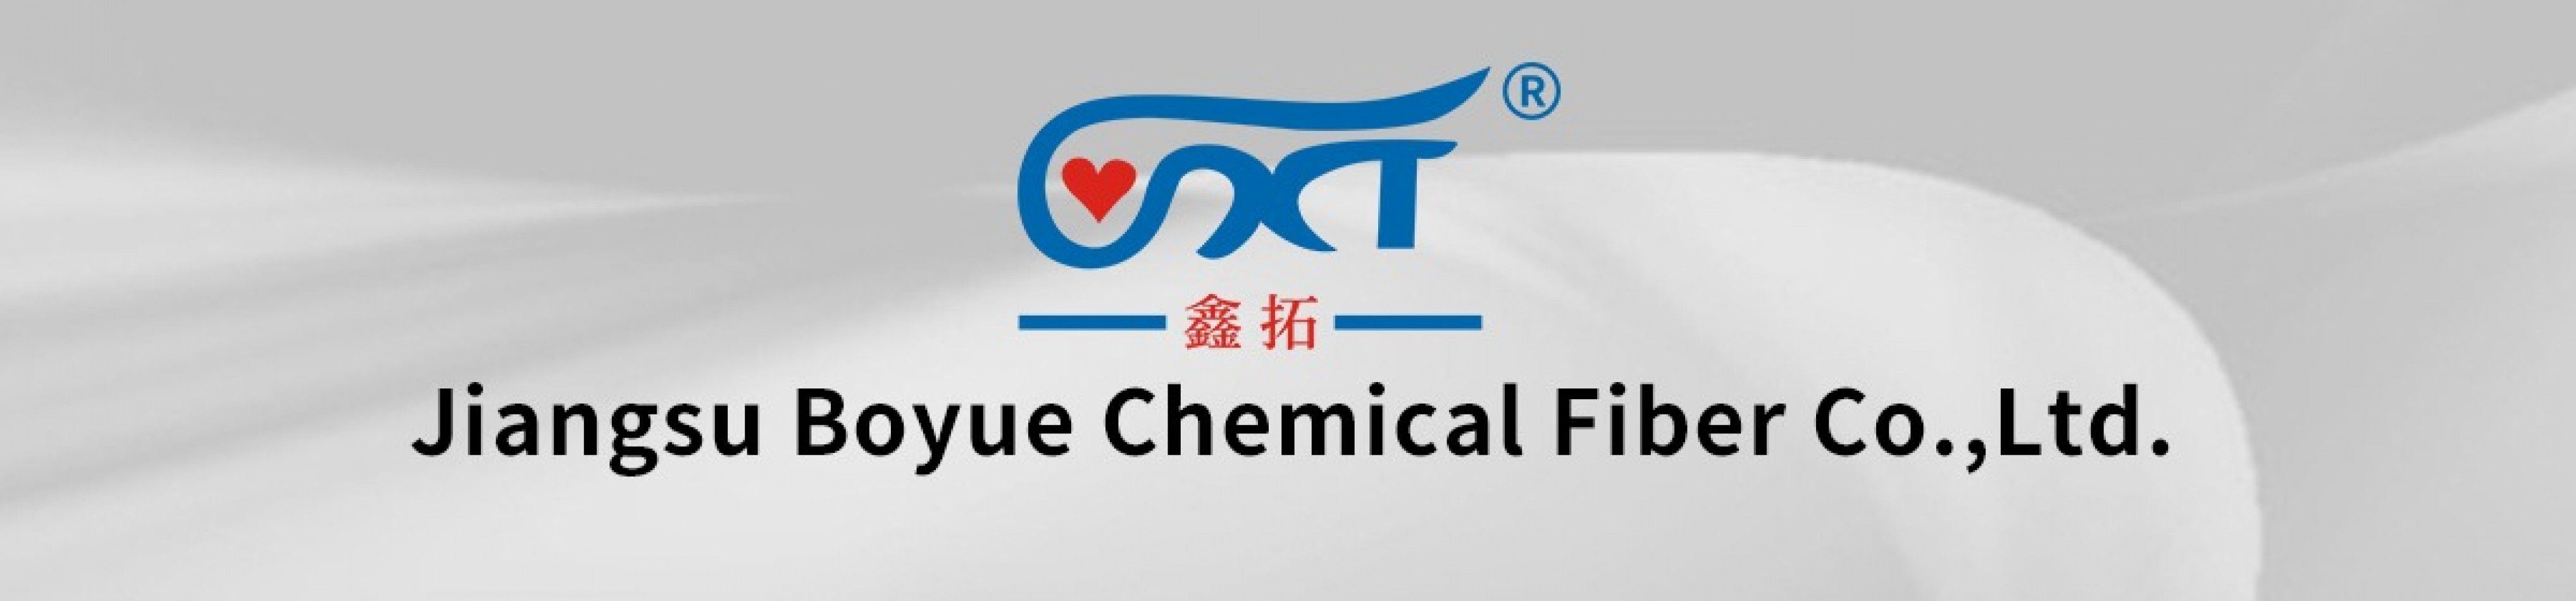 Jiangsu Boyue Chemical Fiber Co.,Ltd